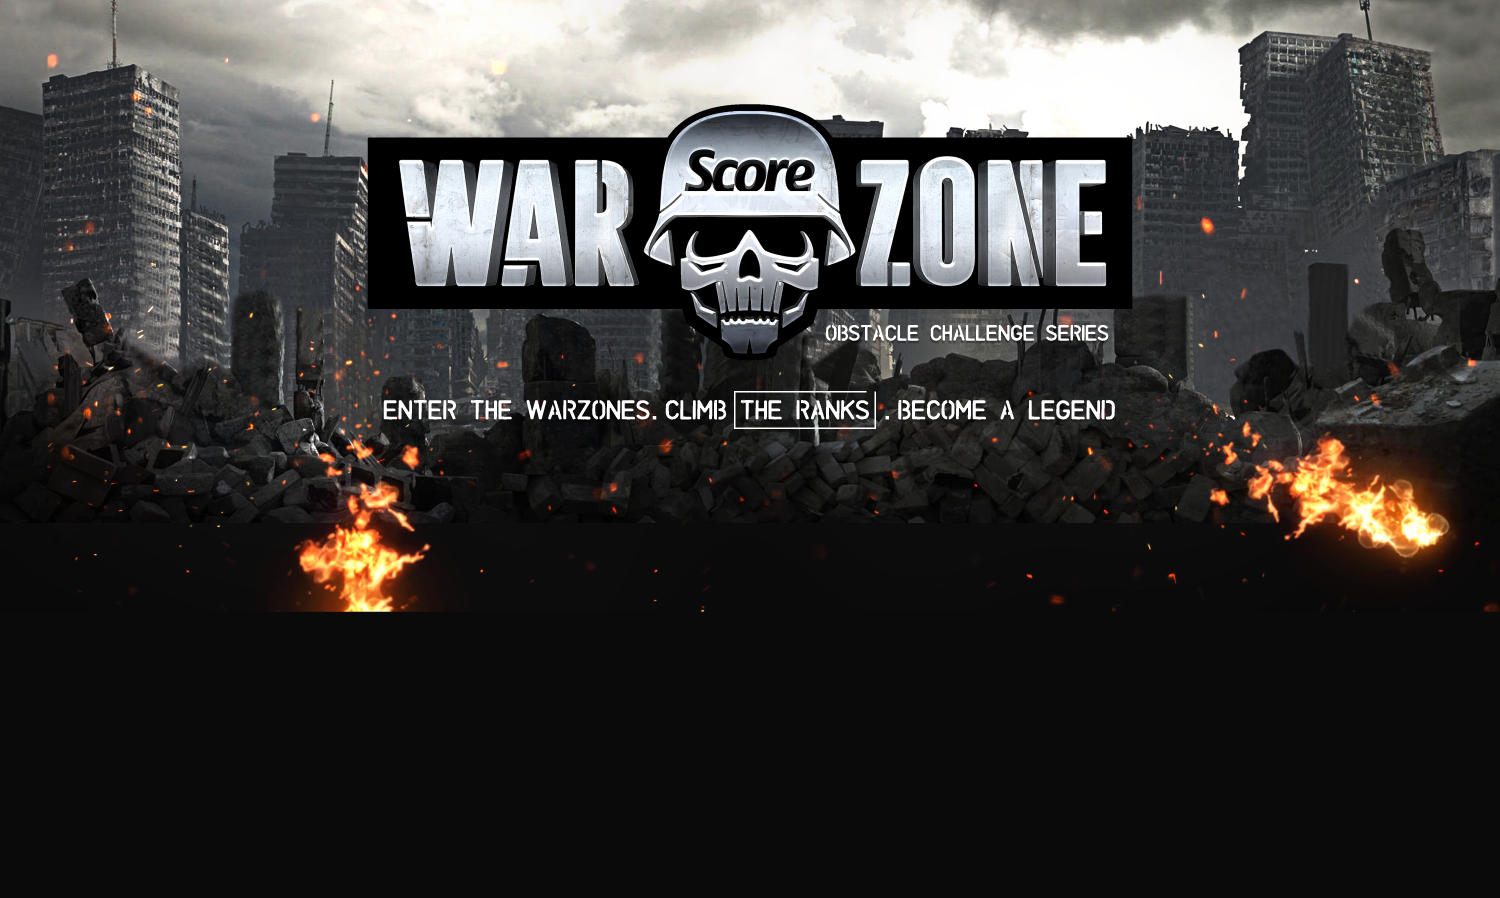 Call of duty warzone play. Заставка варзон. Шапка для ютуба Warzone. Стрим Cod Warzone. Call of Duty Warzone.